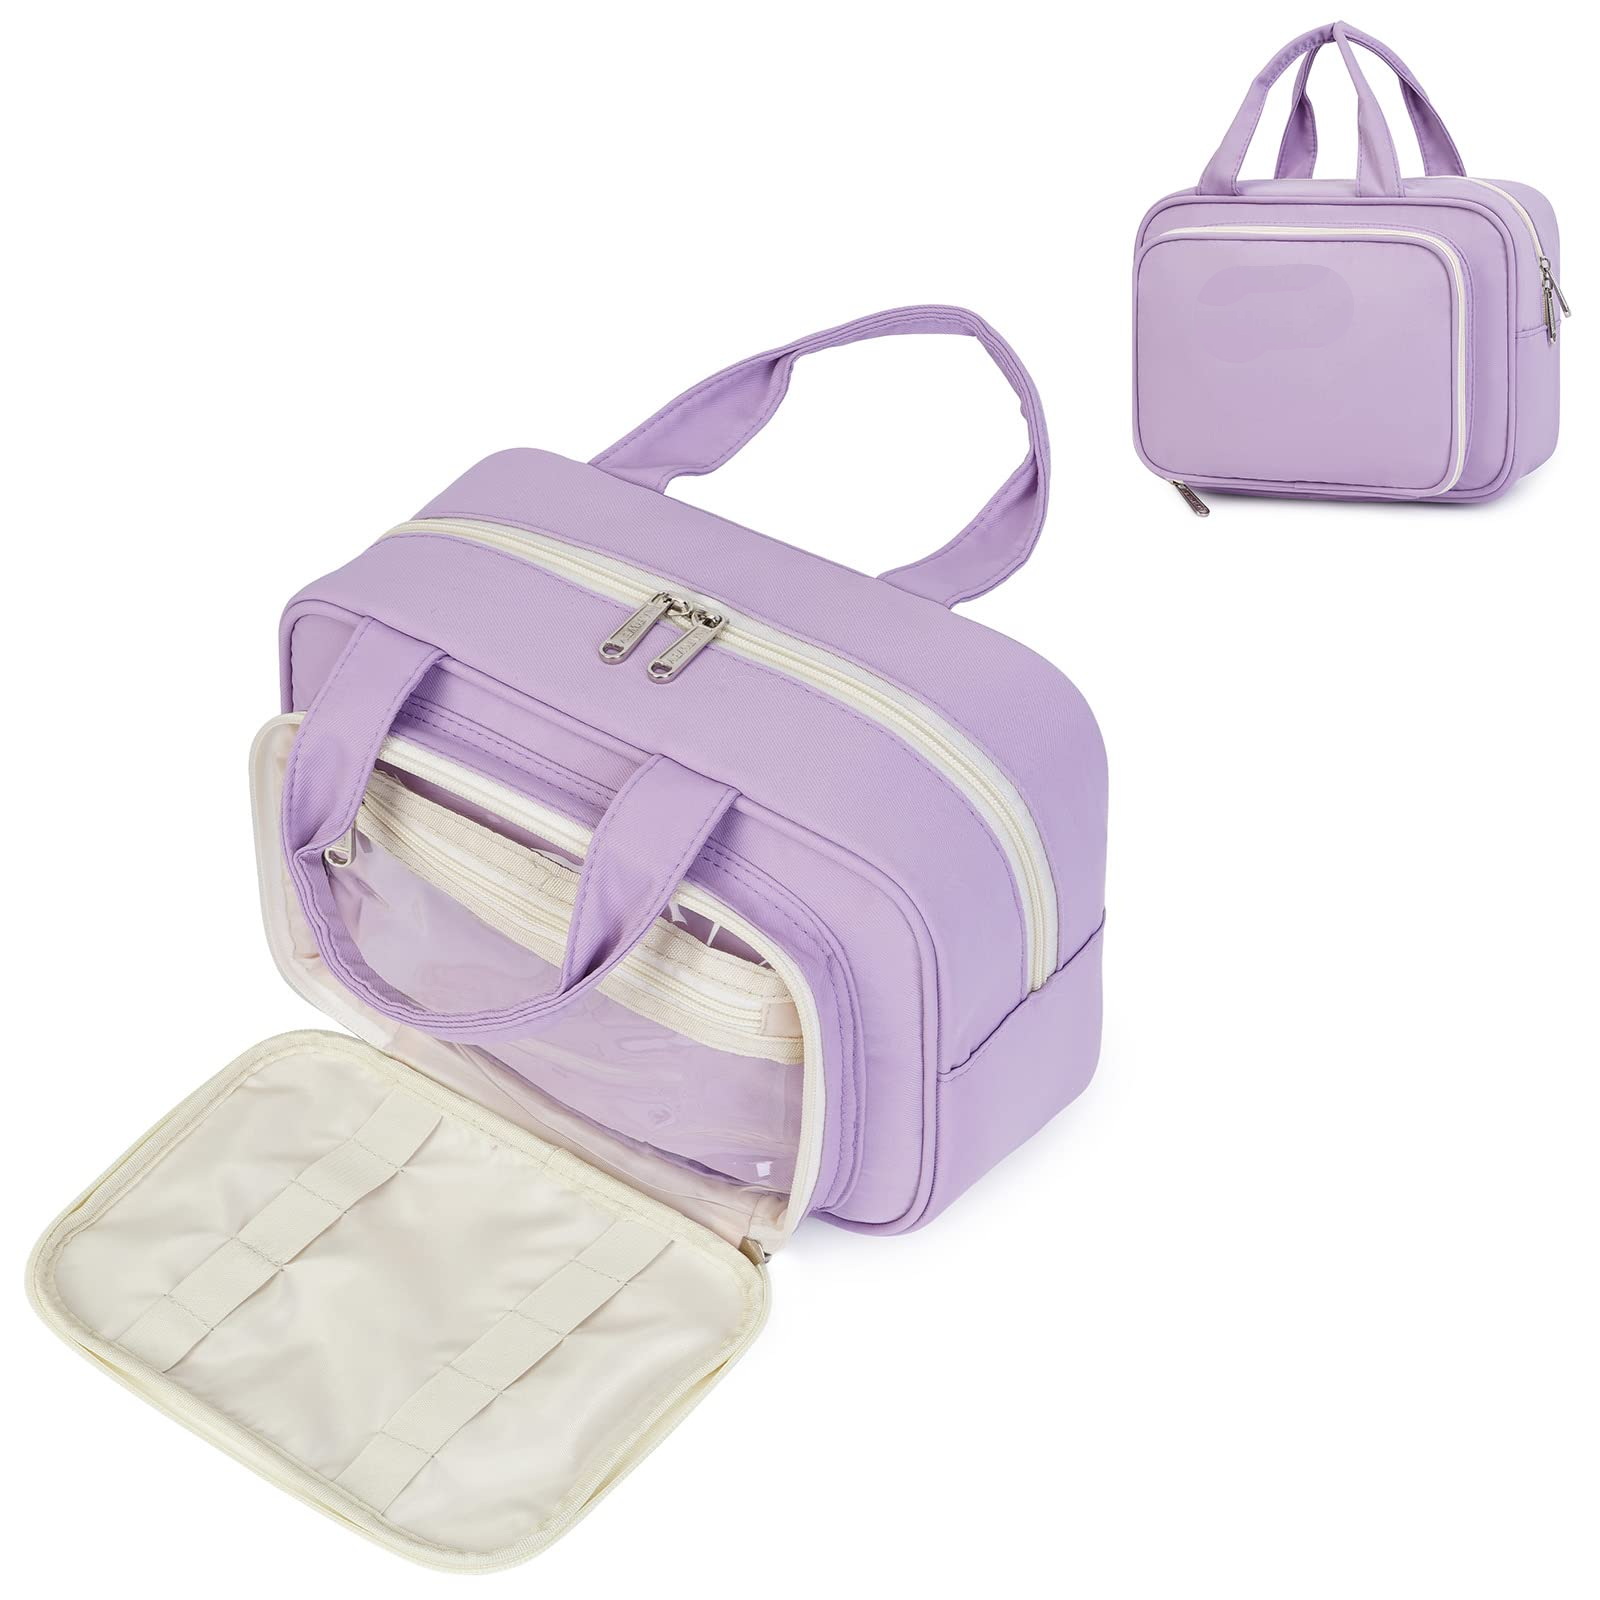 Travel Cosmetics Bag Large Capacity Toiletry Organizer Bag Premium Makeup Bag